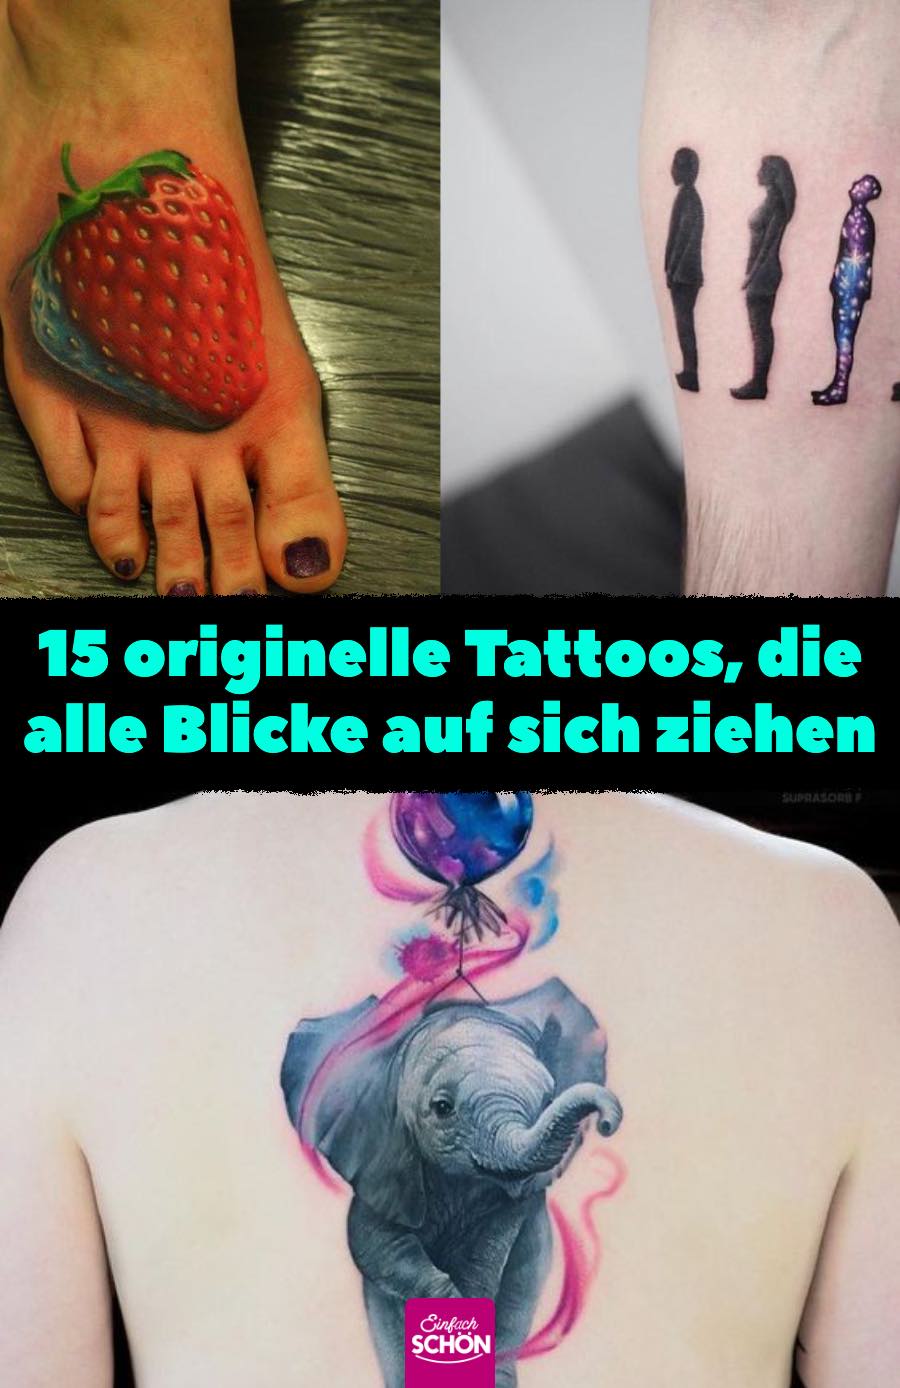 15 originelle Tattoos, die alle Blicke auf sich ziehen